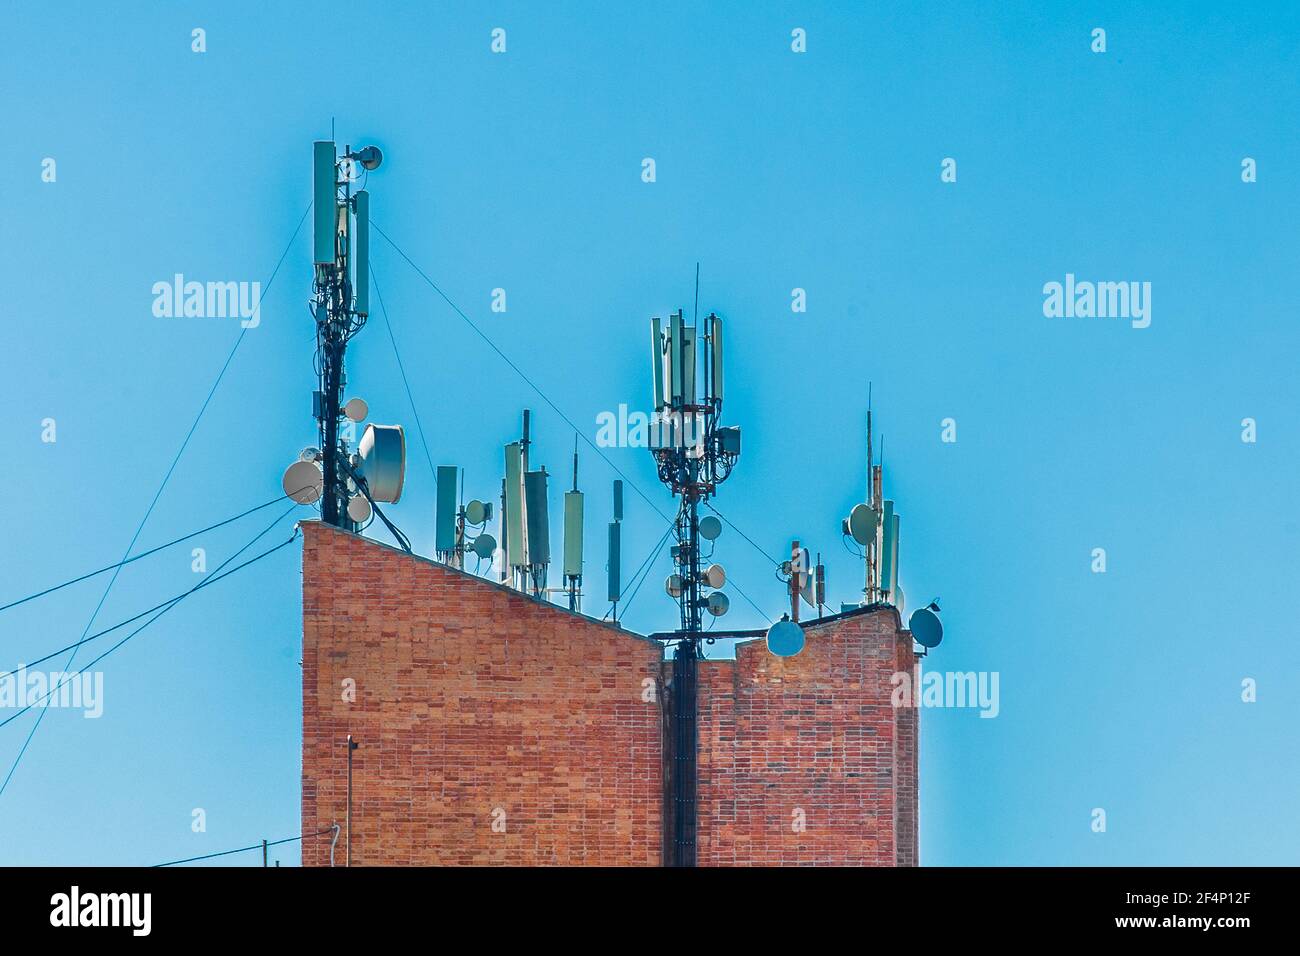 Tour de brique de télécommunication avec antennes sans fil mobiles sur fond bleu ciel. Banque D'Images